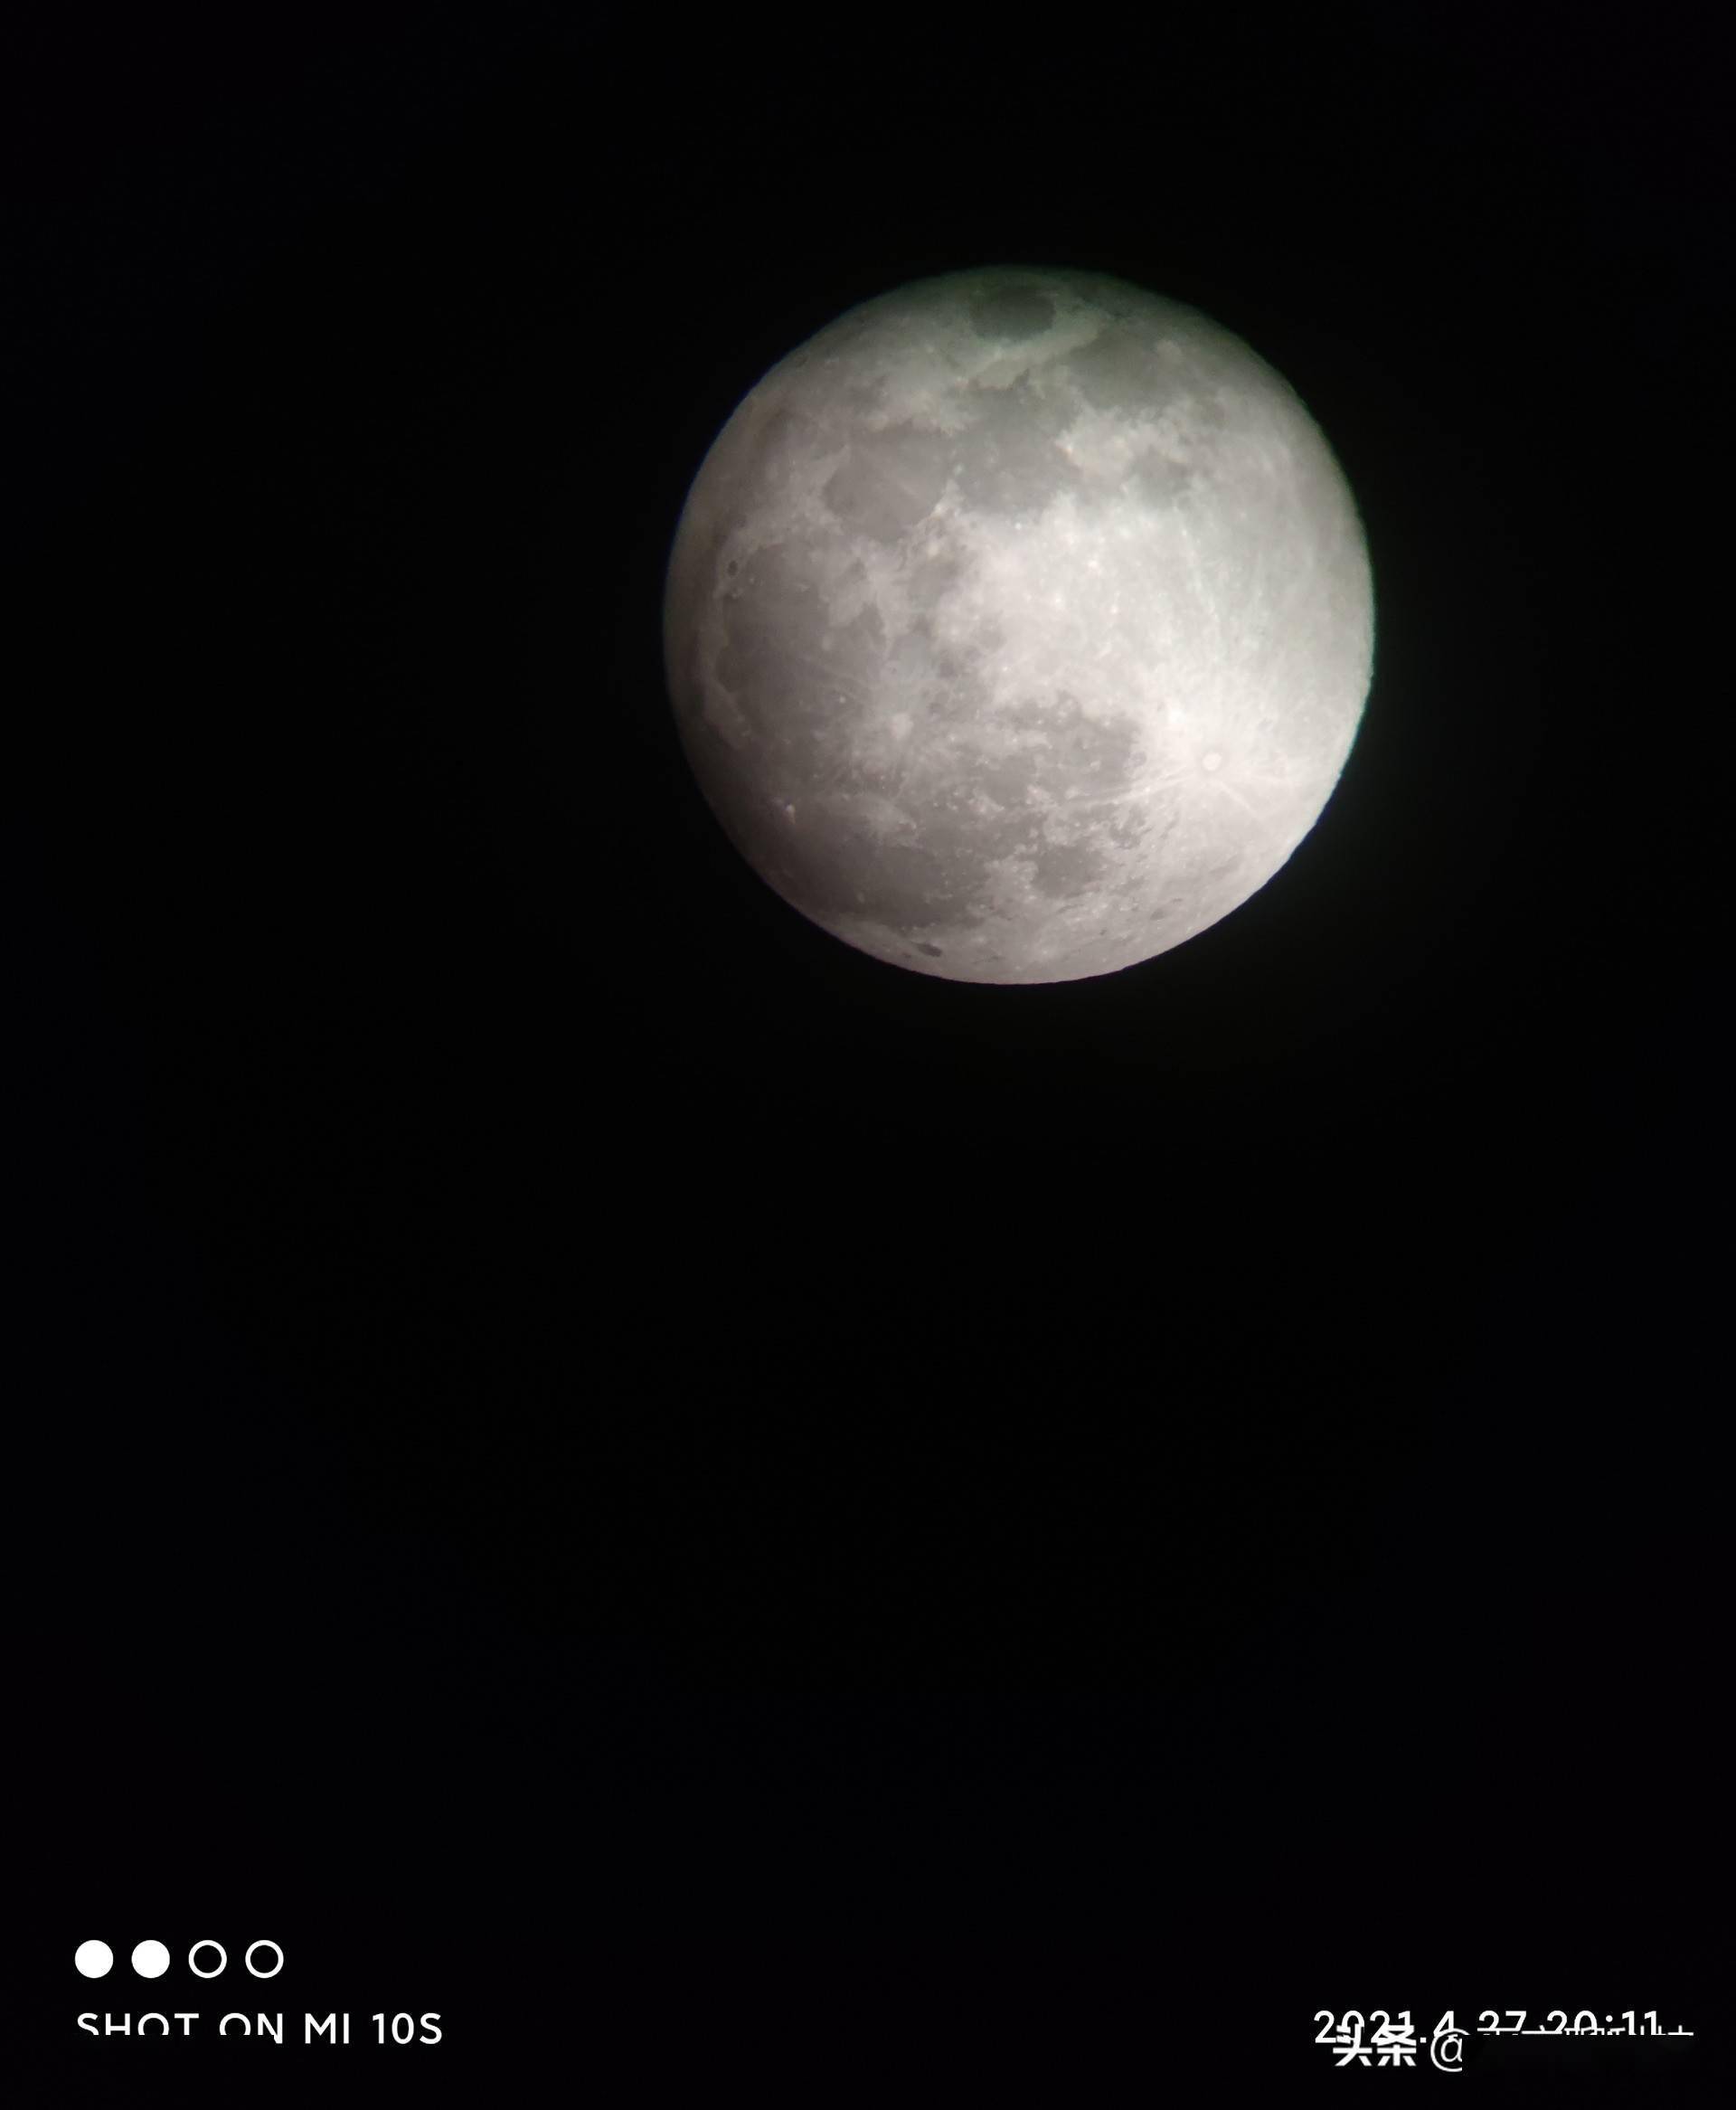 小米10s拍摄21年首个超级月亮,高清图来了,震撼